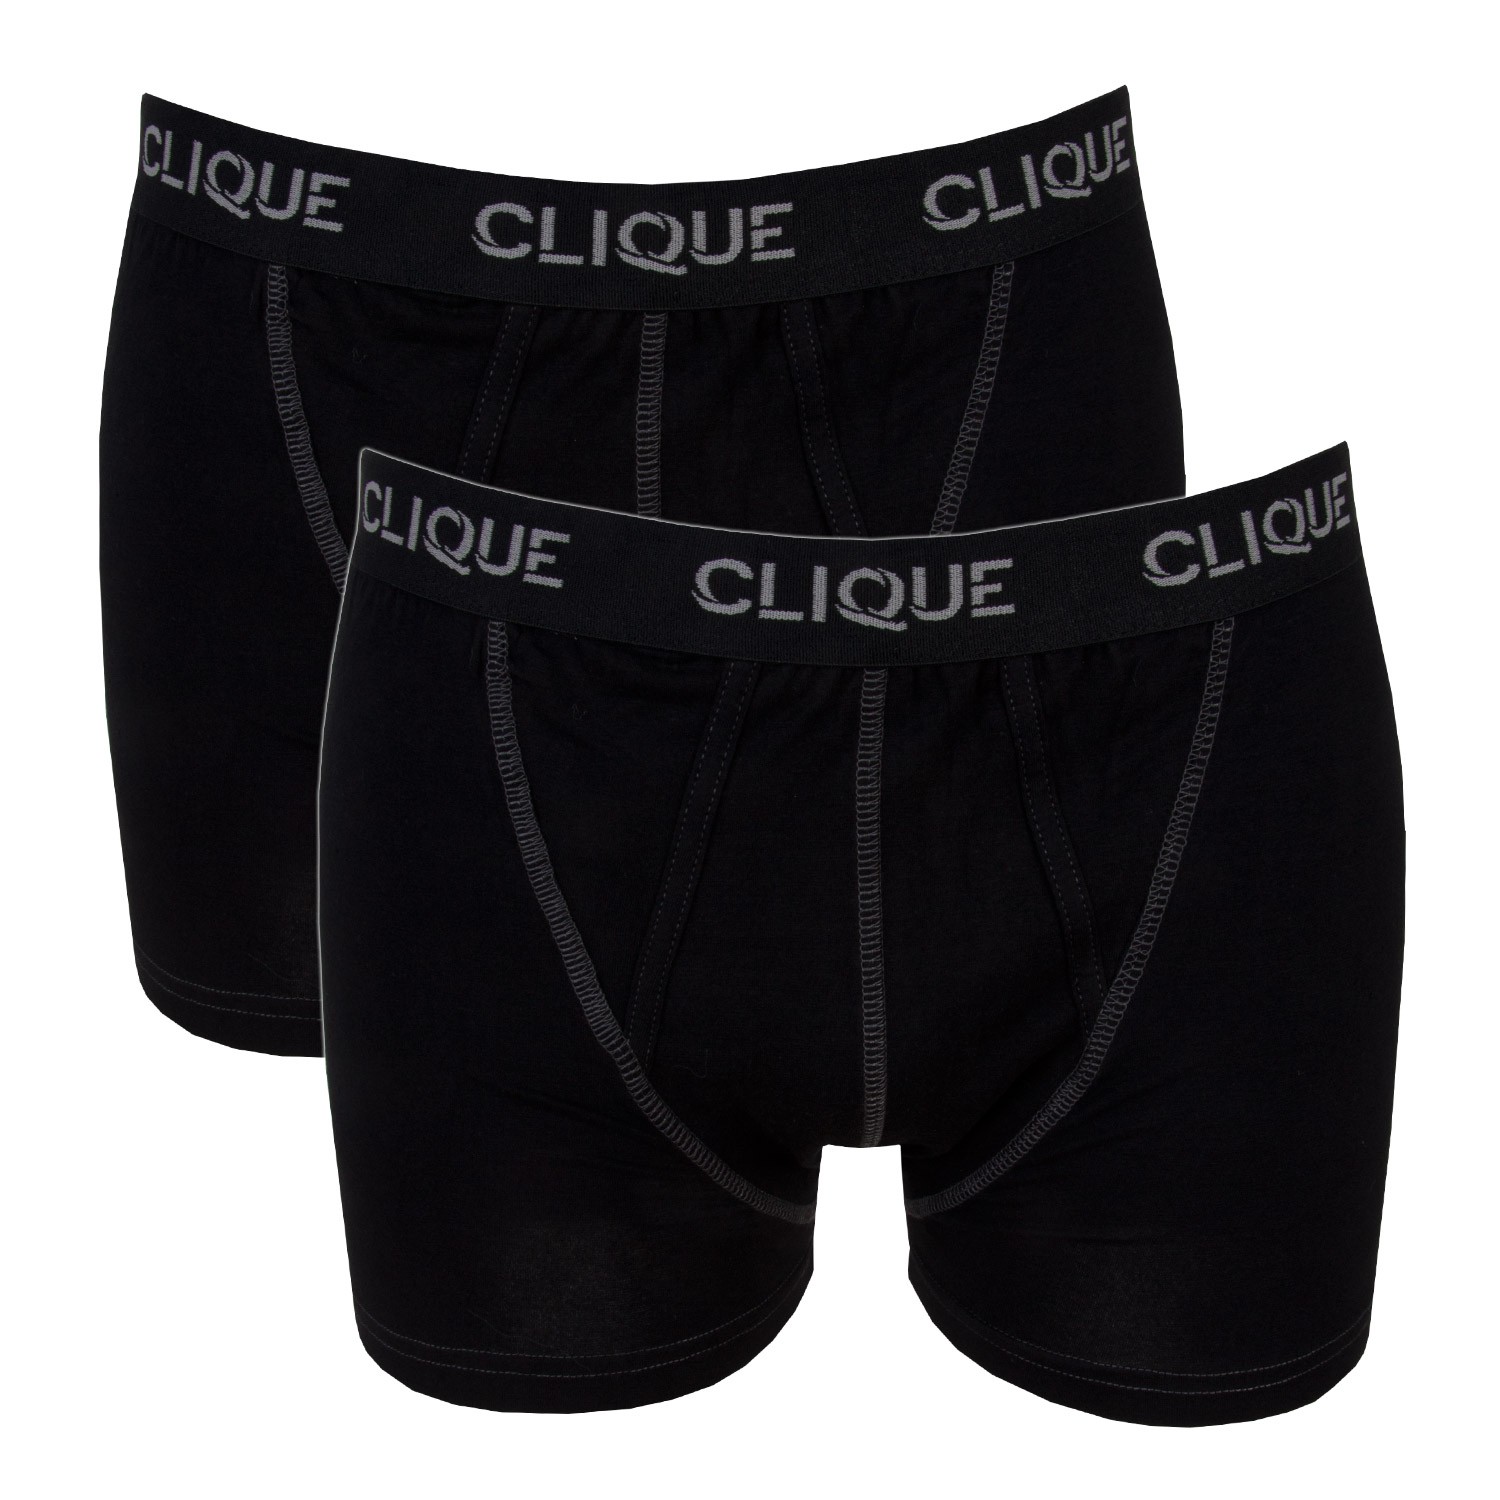 2-Pack Clique Short Boxer Black 035054-99 - Boxer - Trunks - Underwear ...